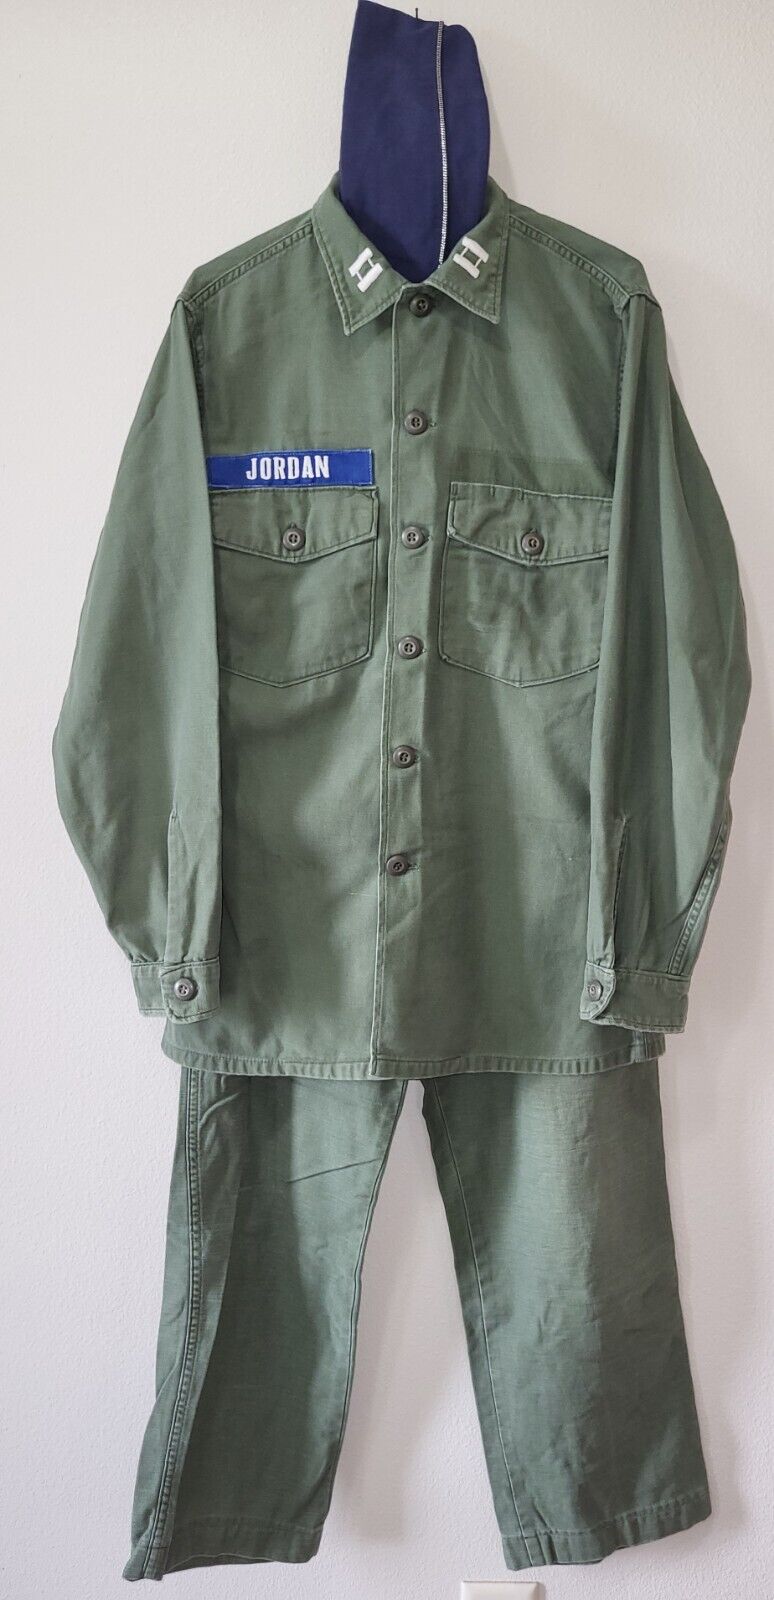 AIR FORCE Vietnam War SATEEN OG-107 Uniform Jungle Jacket, Pants Trousers, Belt